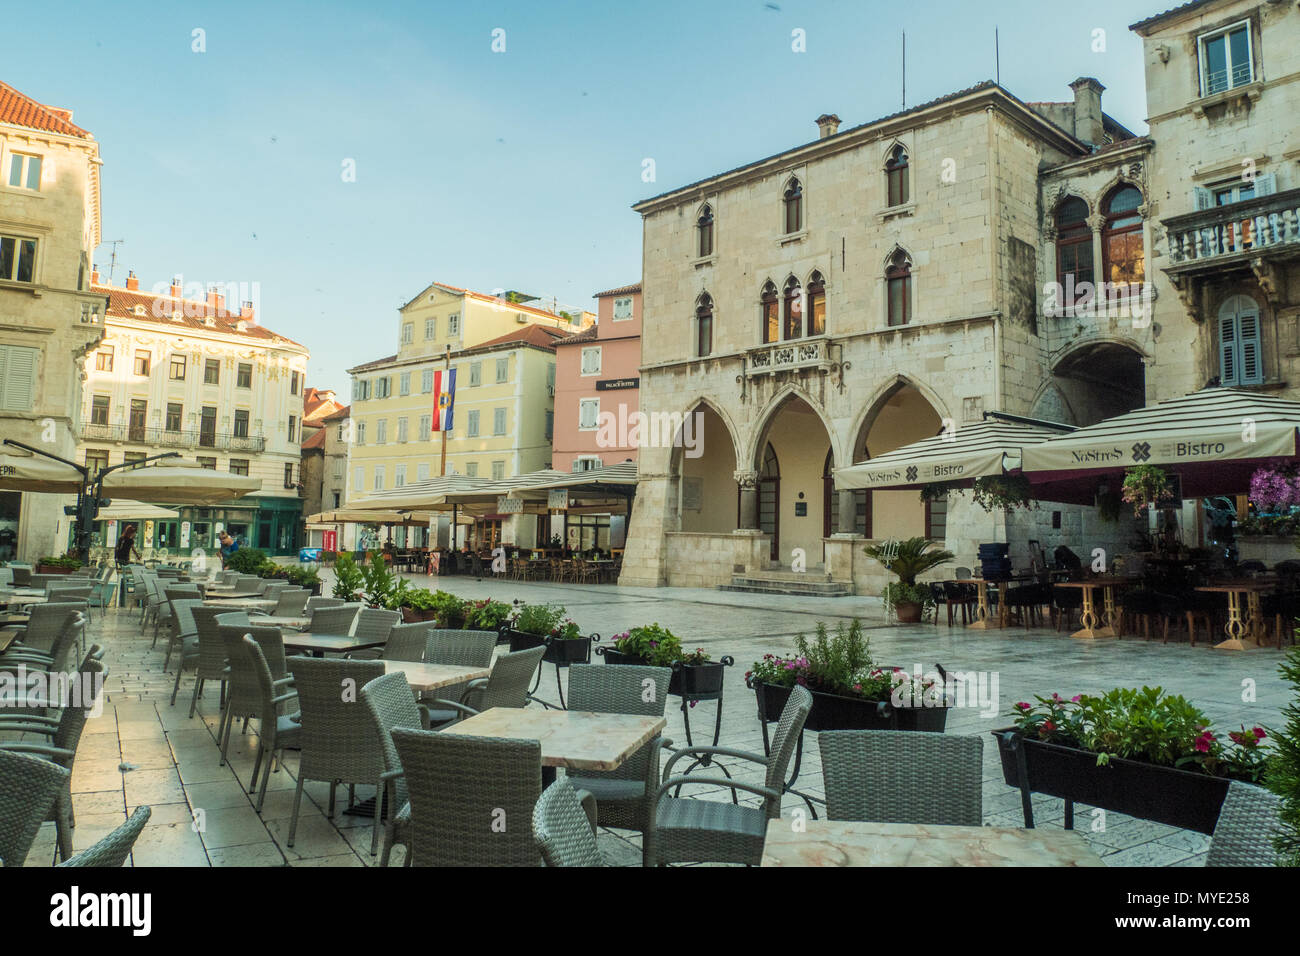 La place principale de la vieille ville de Split, Croatie. Banque D'Images